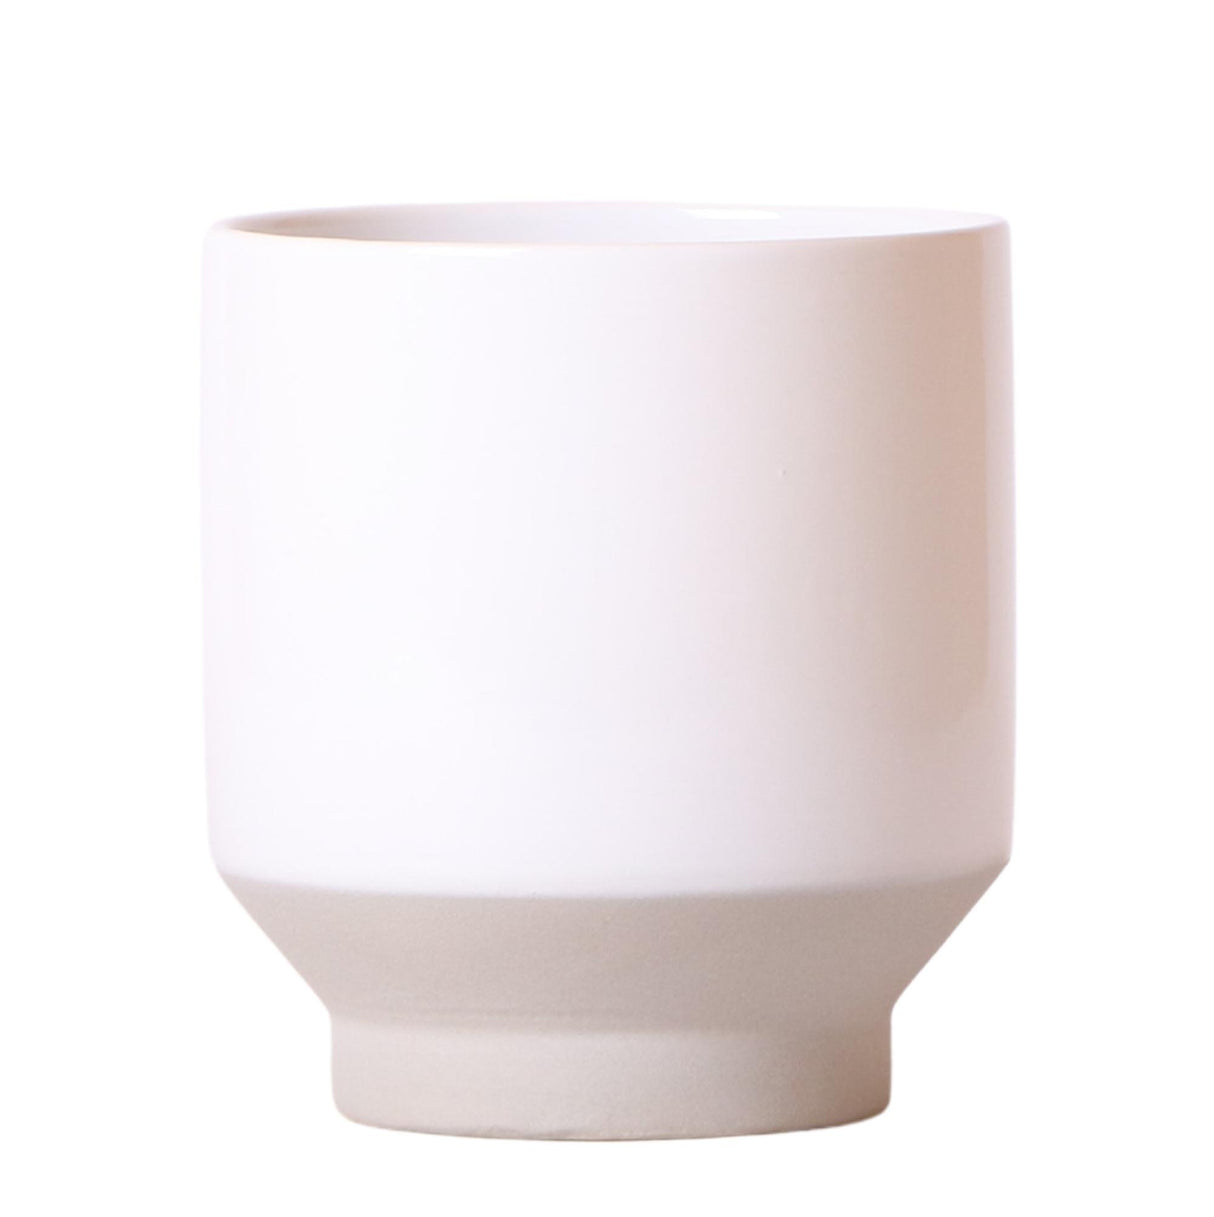 Jardinera de cerámica blanca - Ø12cm